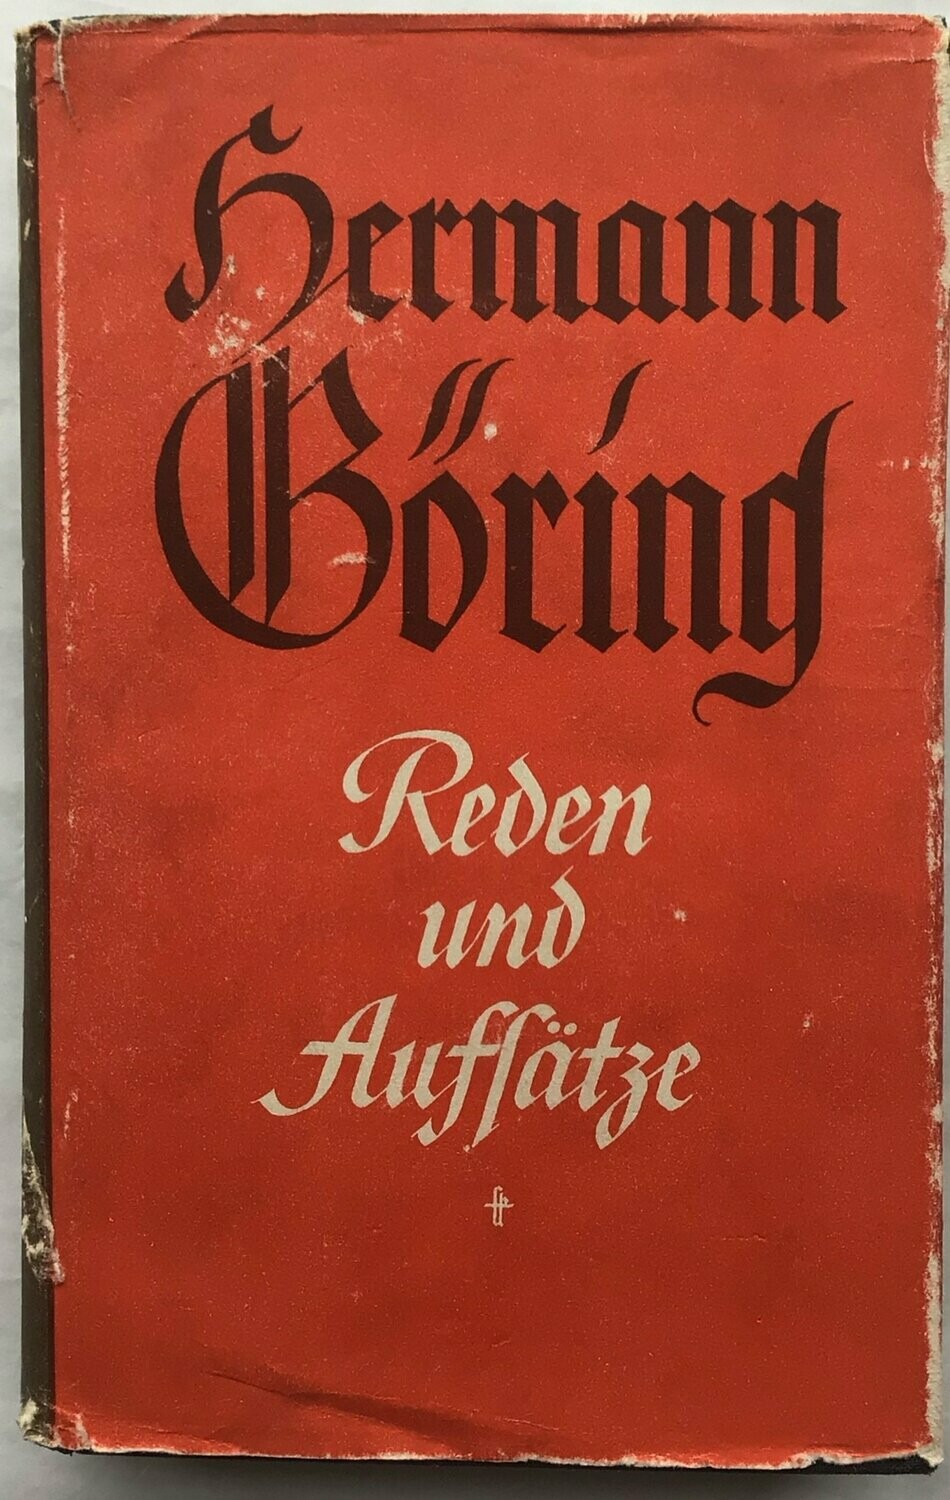 Hermann Göring - Reden und Aufsätze - Ganzleinenausgabe mit Original-Schutzumschlag - 5. Auflage aus 1941